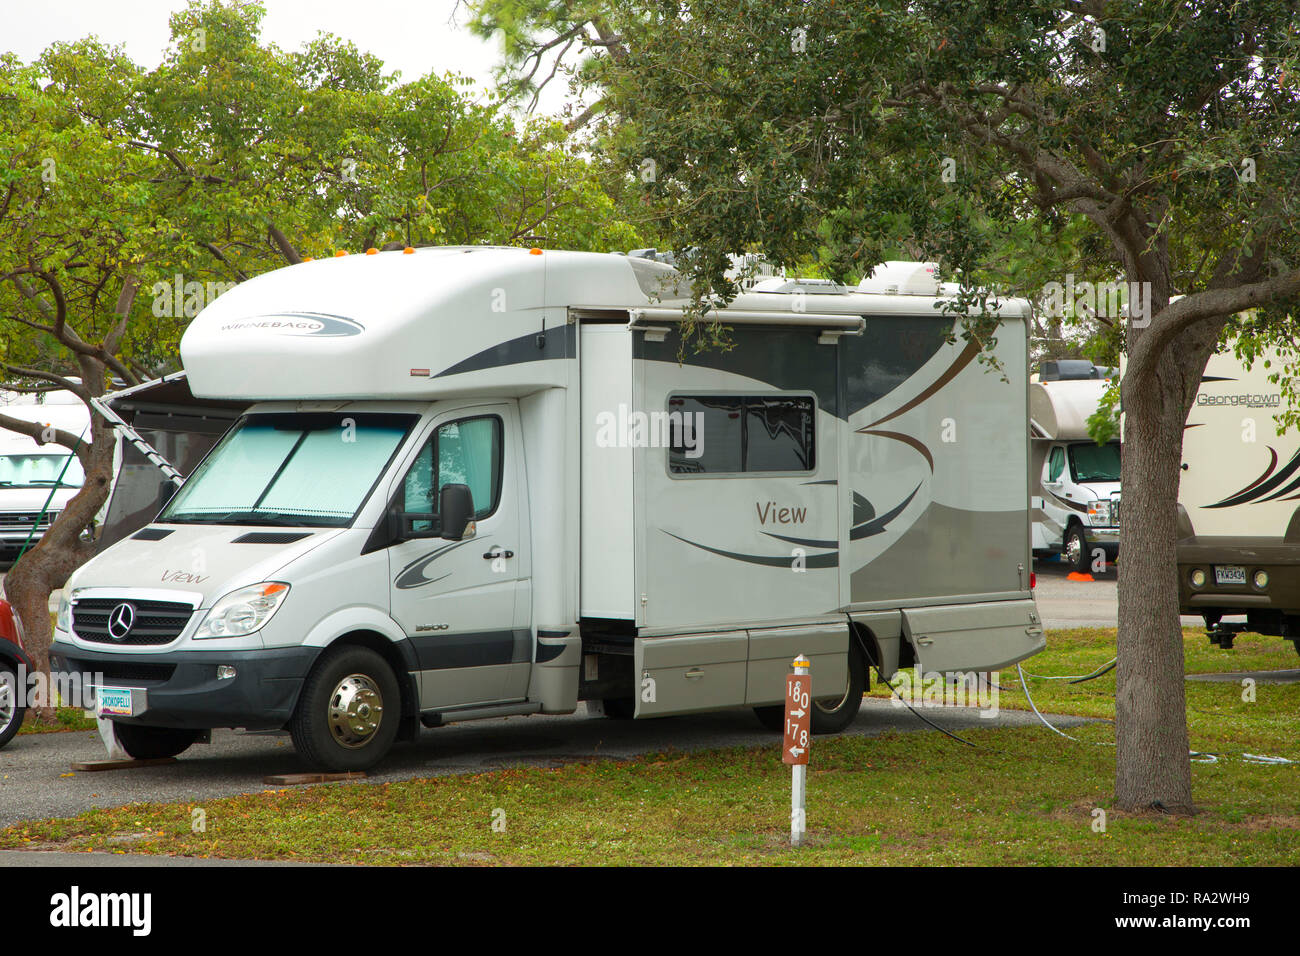 Camping dans la région de campground, John Prince Park, Lake Worth, Floride Banque D'Images